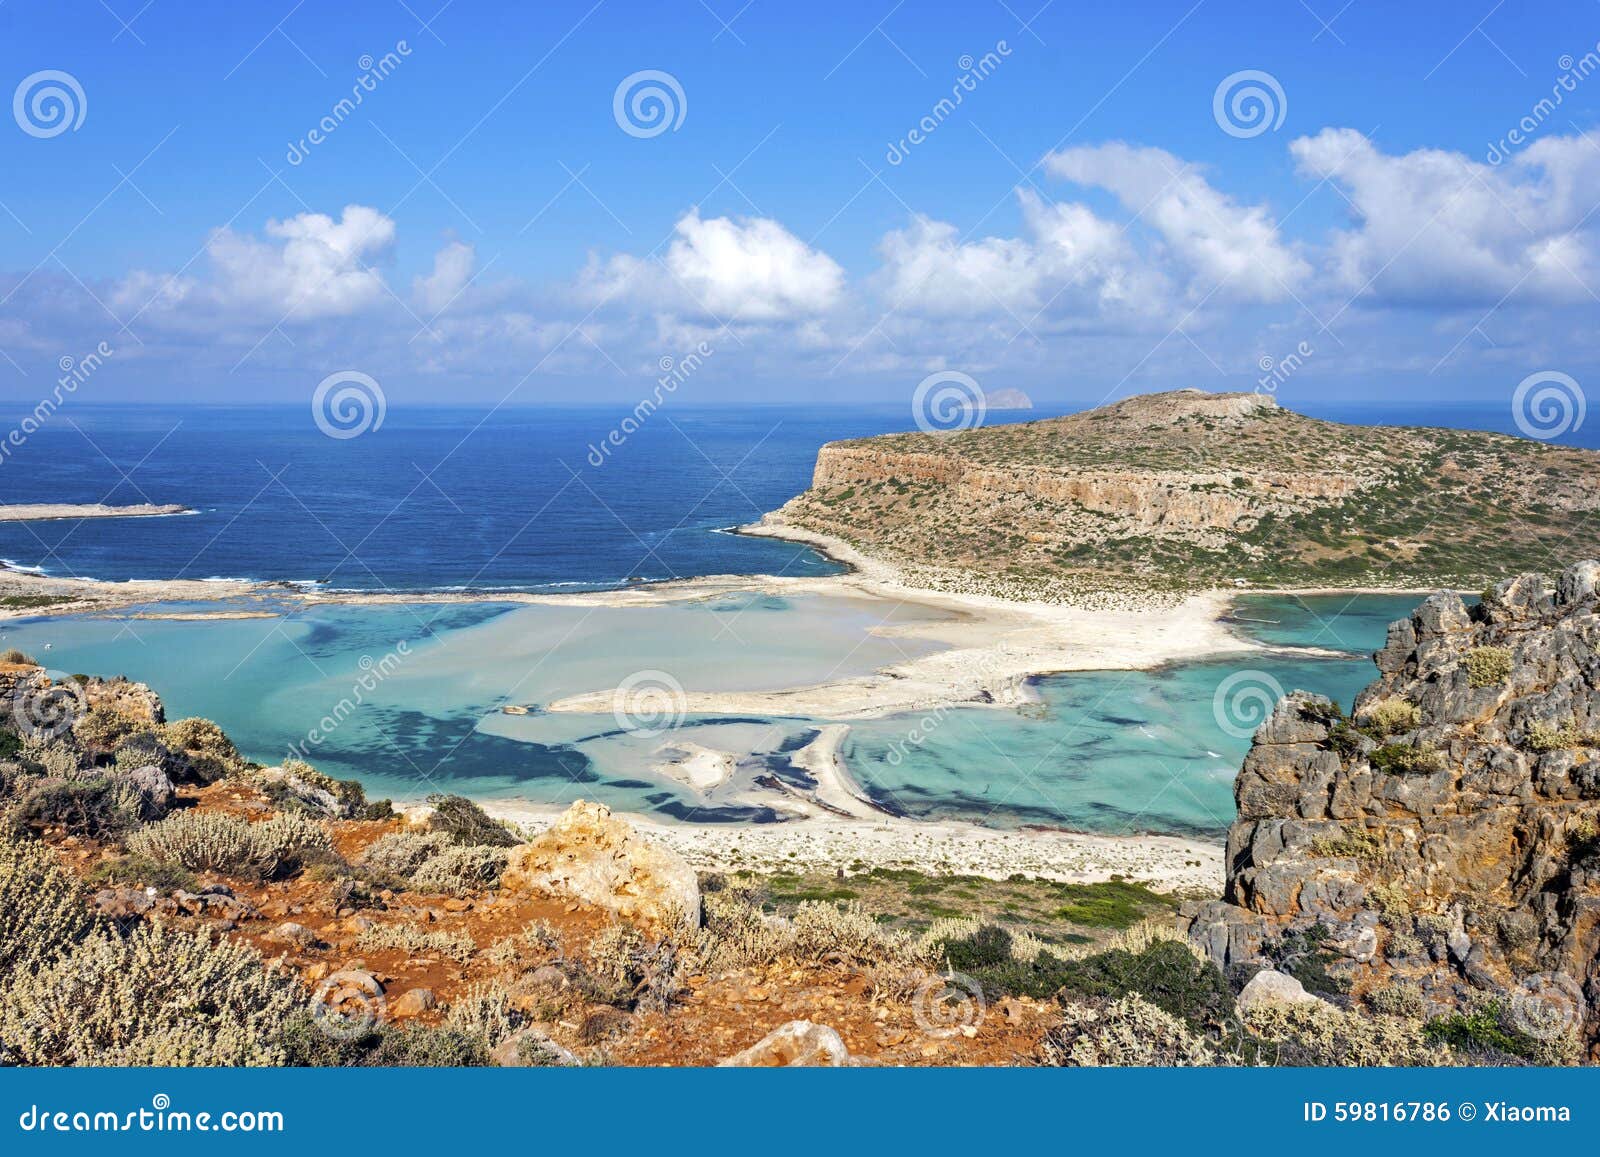 balos beach at gramvousa, crete